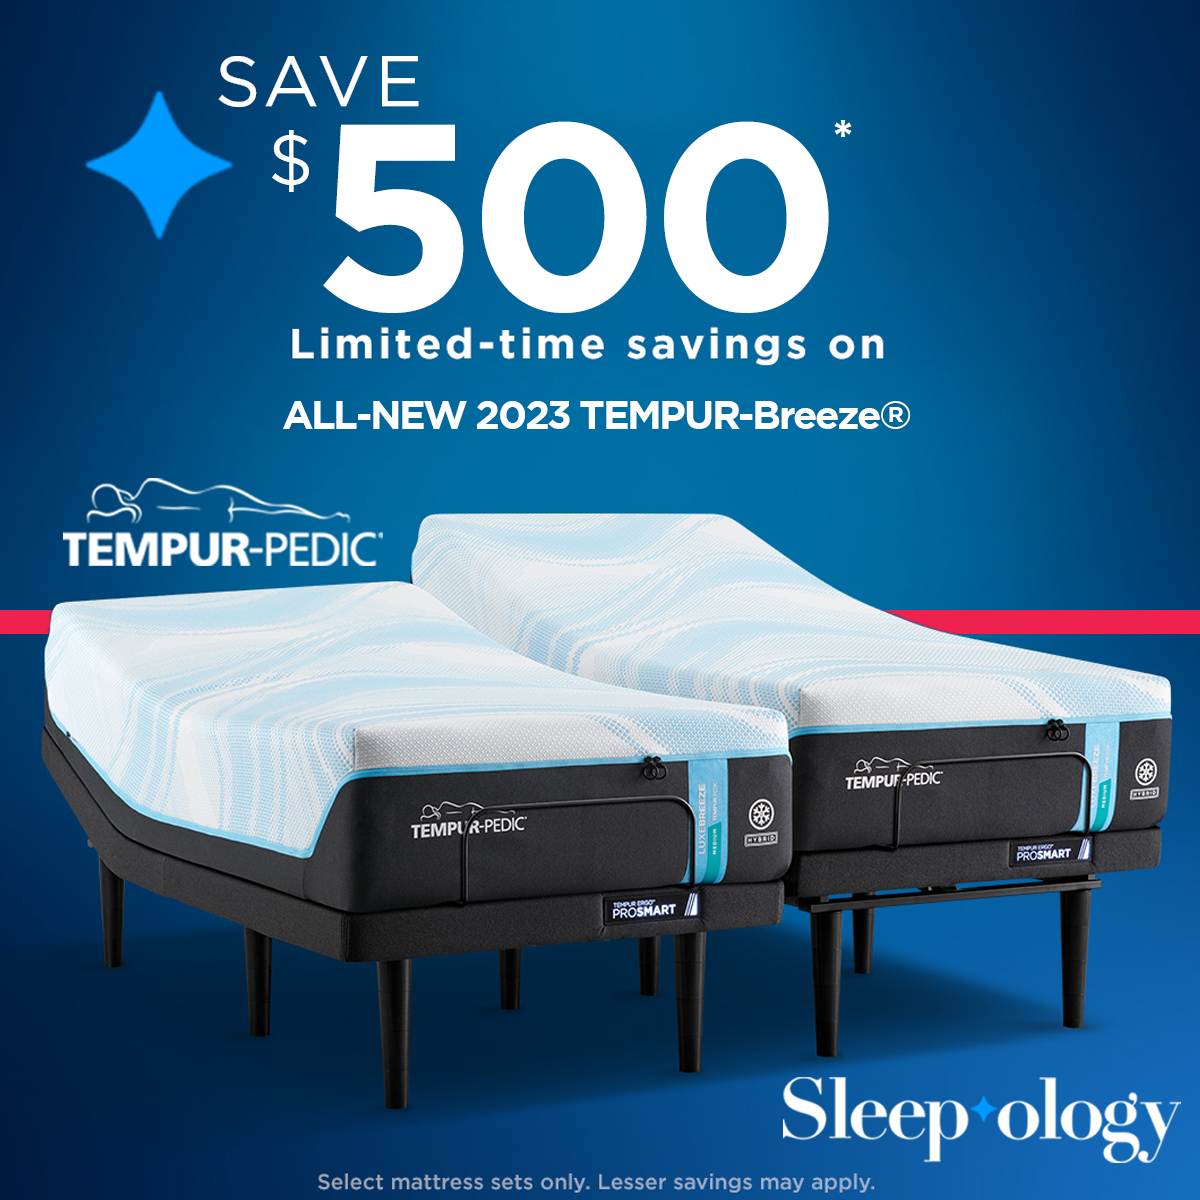 Save up to $500 on Tempur-Pedic mattresses at Sleepology